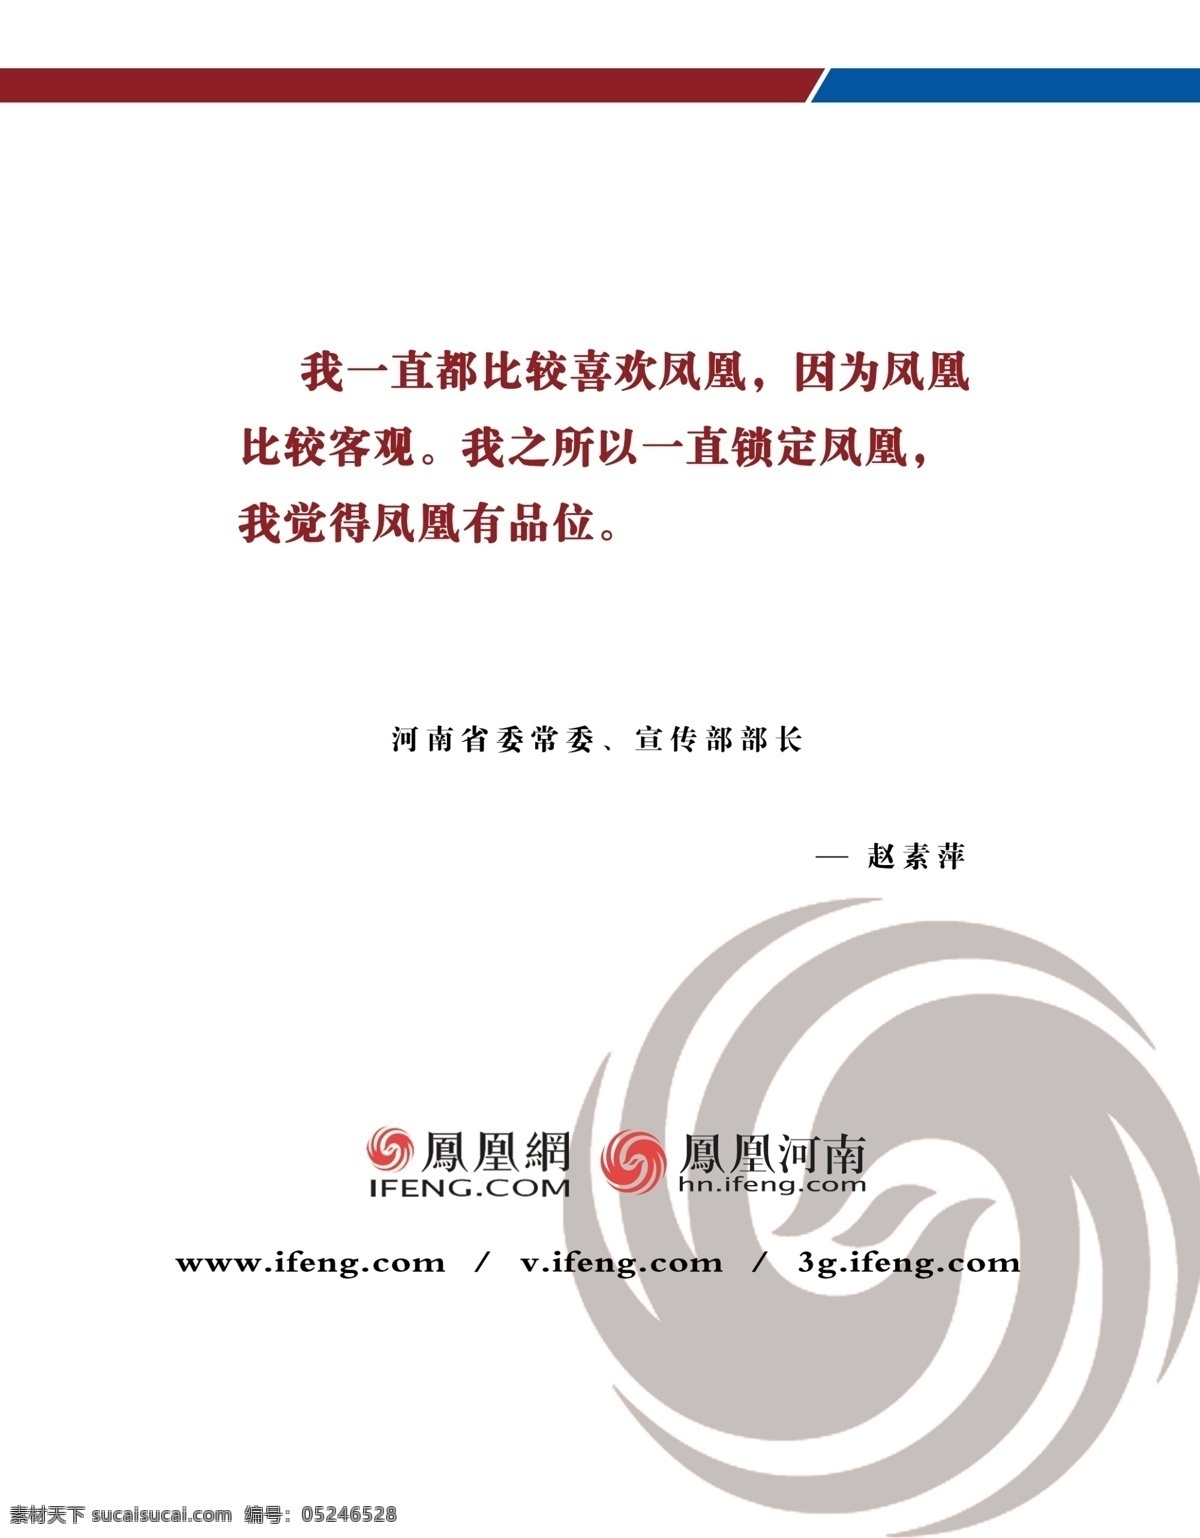 制度展板 展板 凤凰网 logo 企业展板 制度板 文化艺术 传统文化